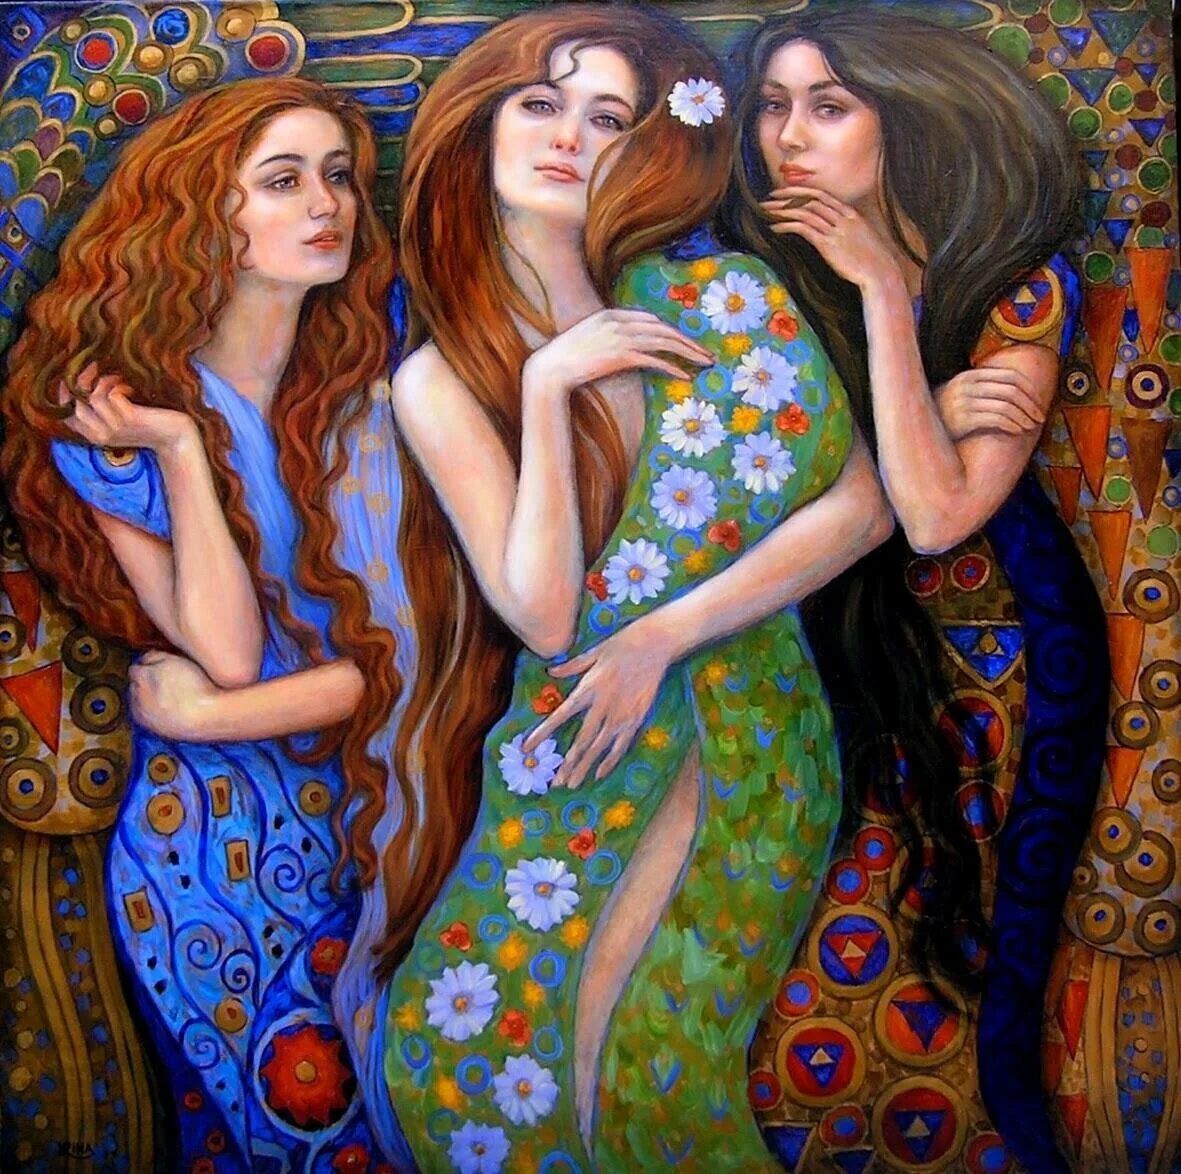 Трое сестер или три сестры. Холли Сьерра художница.